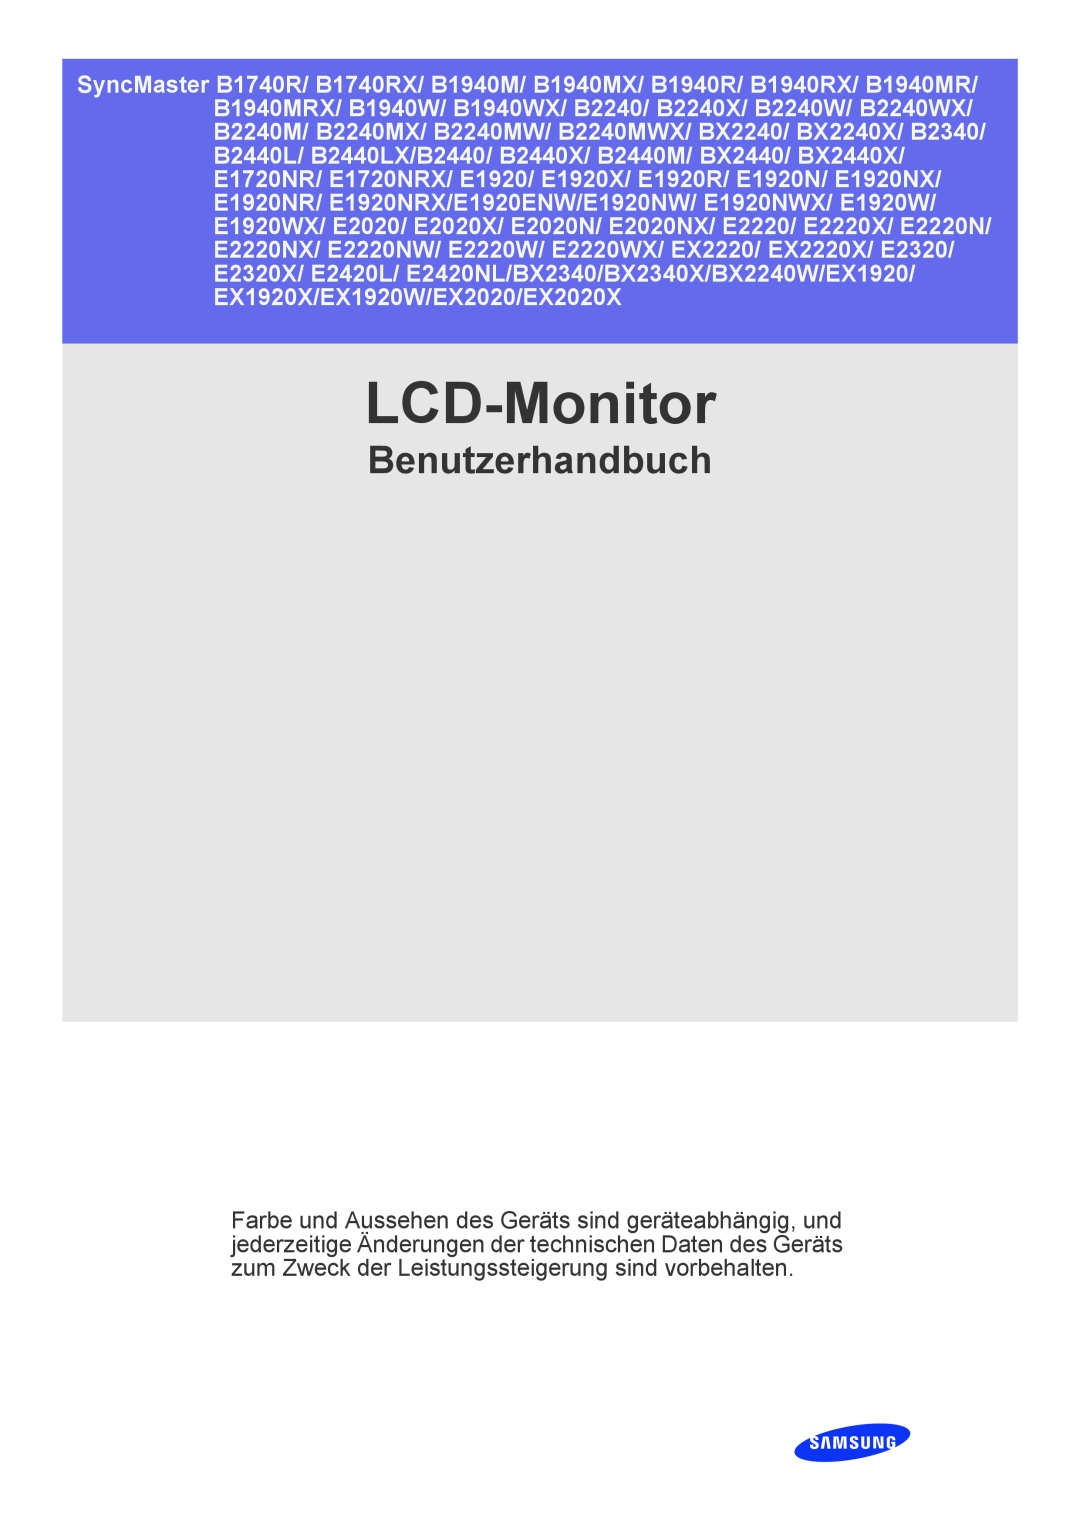 Samsung LS19CLASSUEN, LS22CBDMSV/EN, LS22CBUMBV/EN, LS19CLNSB/EN, LS22CBUMBE/EN, LS19CLASBUEN manual Monitori, Käyttöopas 